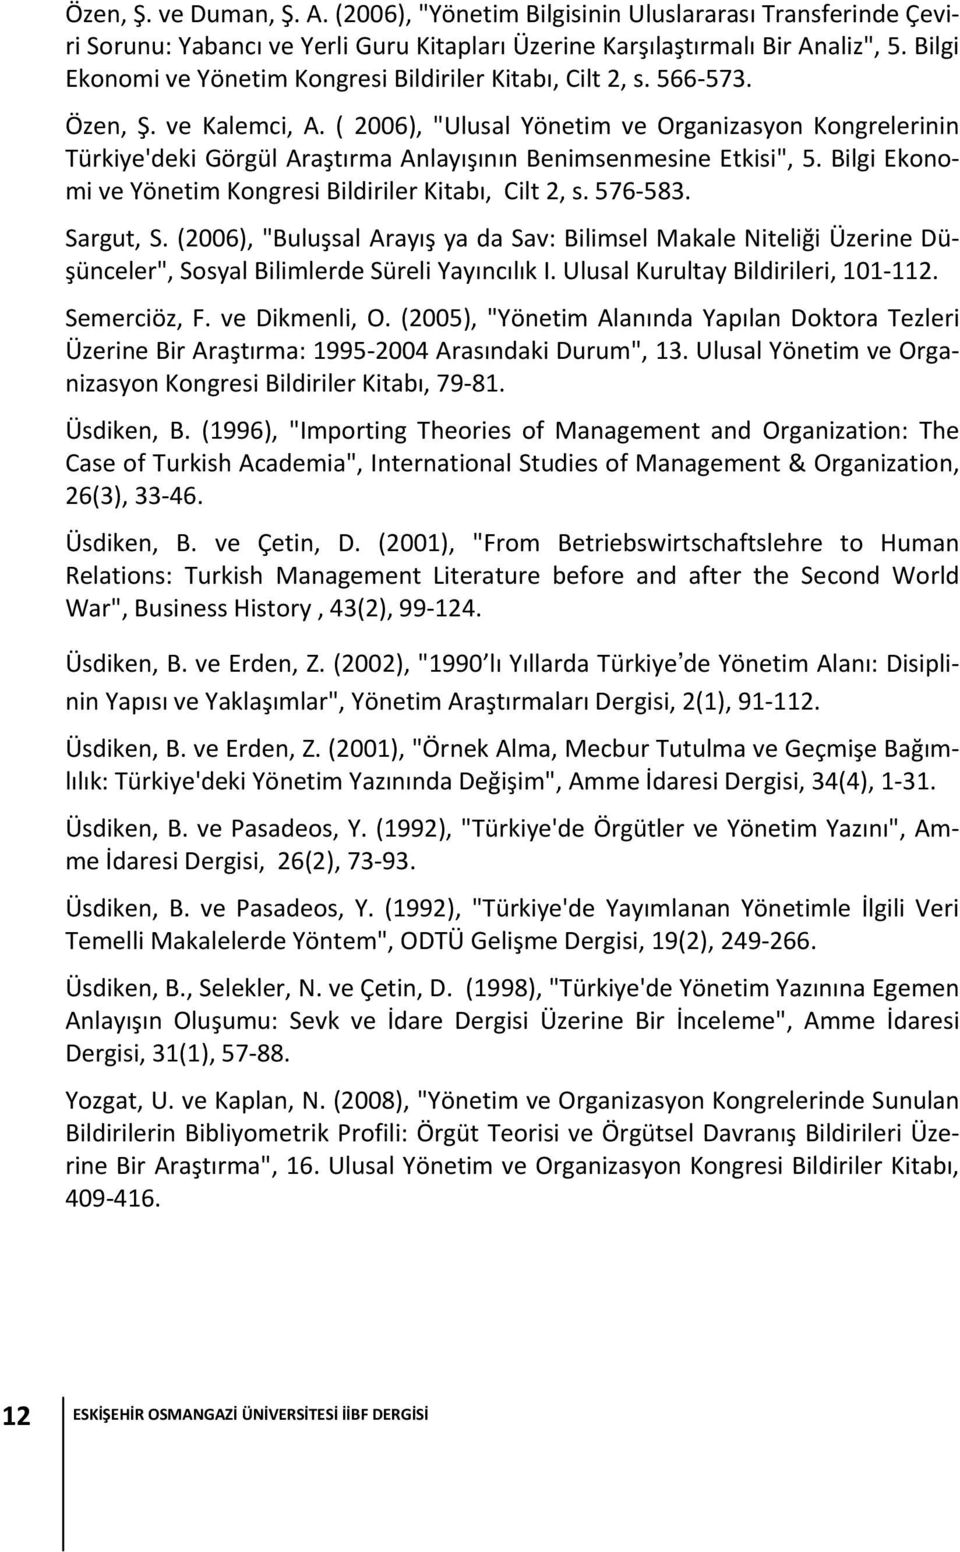 ( 2006), "Ulusal Yönetim ve Organizasyon Kongrelerinin Türkiye'deki Görgül Araştırma Anlayışının Benimsenmesine Etkisi", 5. Bilgi Ekonomi ve Yönetim Kongresi Bildiriler Kitabı, Cilt 2, s. 576 583.